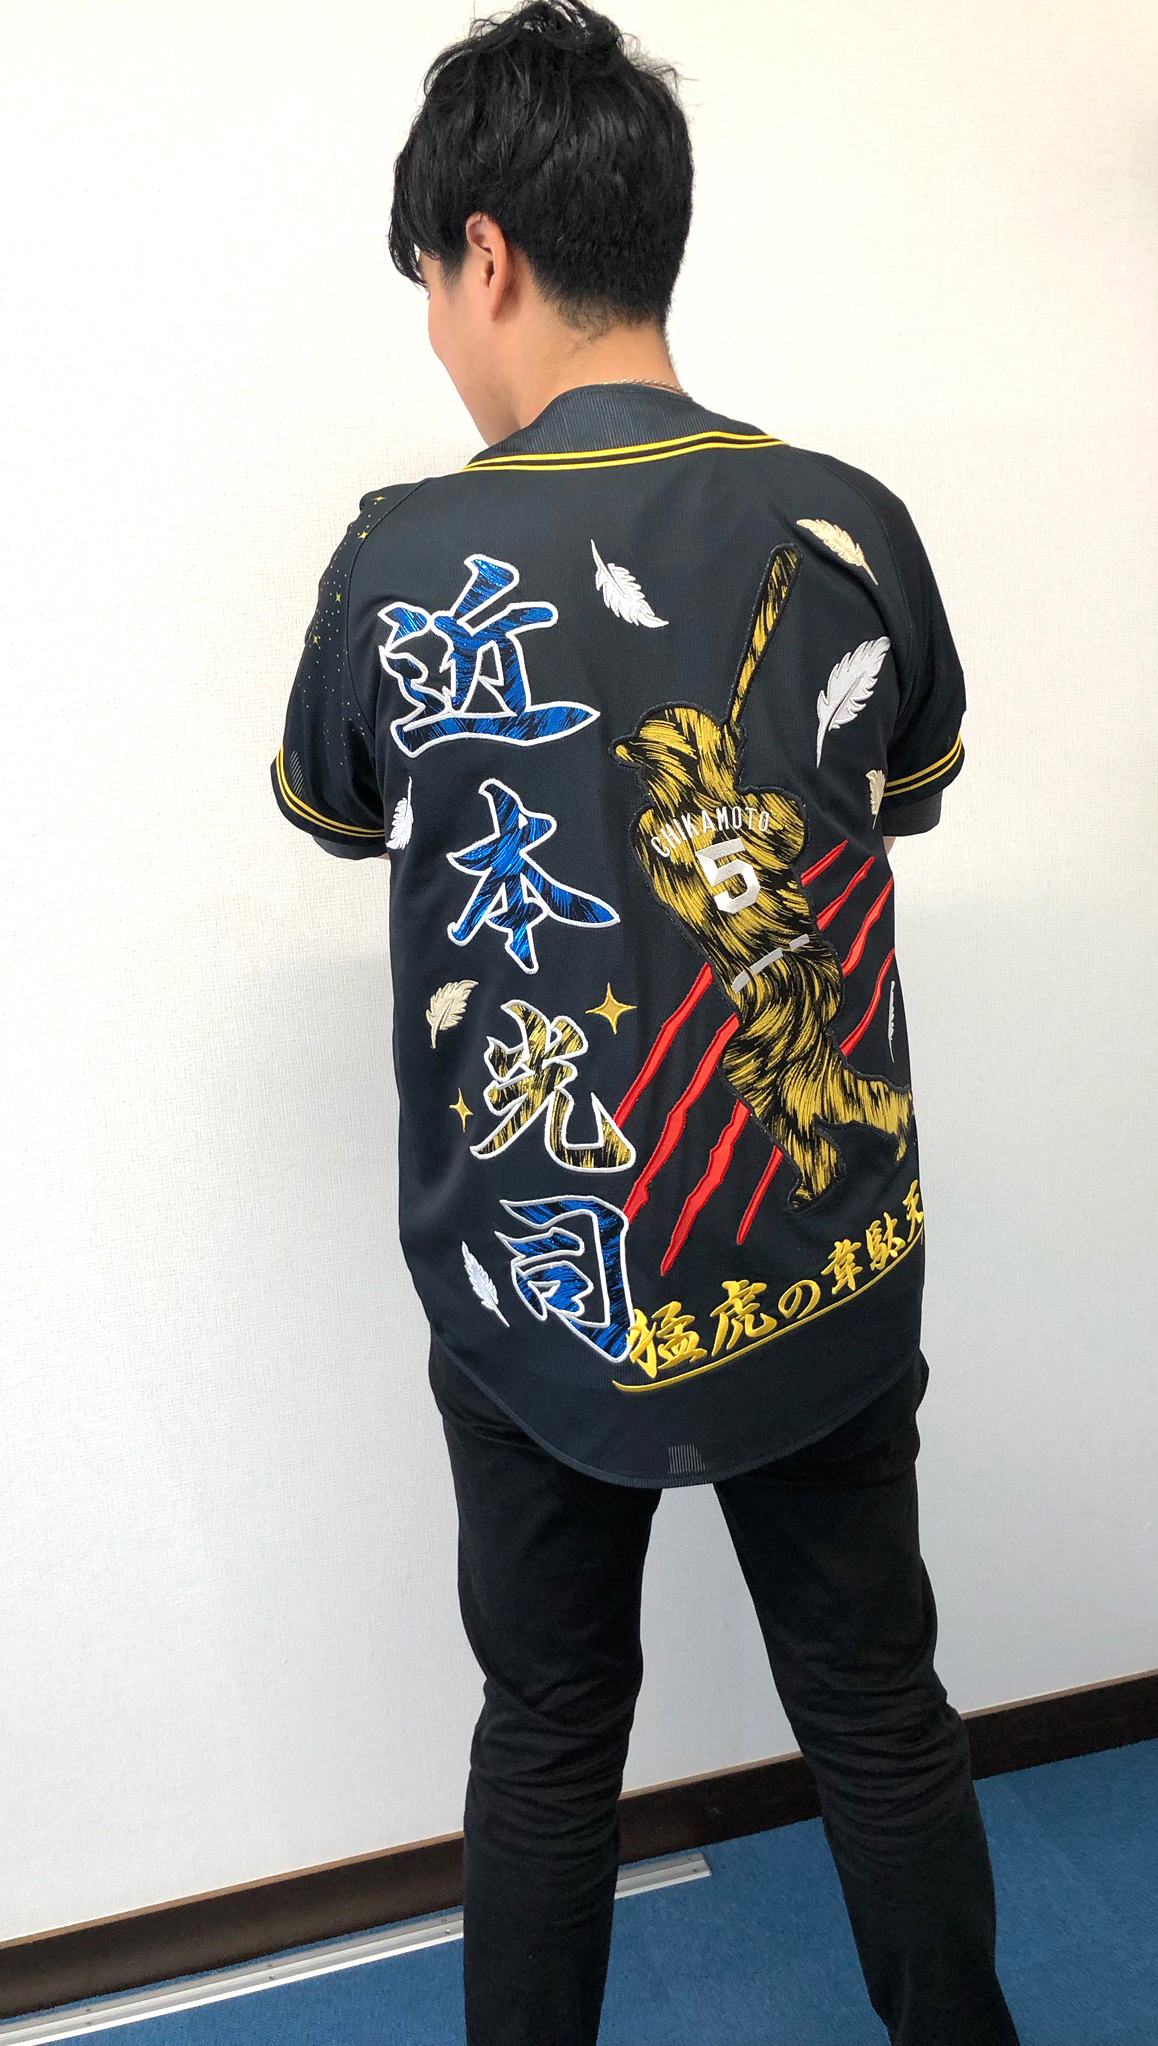 阪神タイガース近本光司選手ユニフォーム – 阪神タイガース – 刺繍専門 